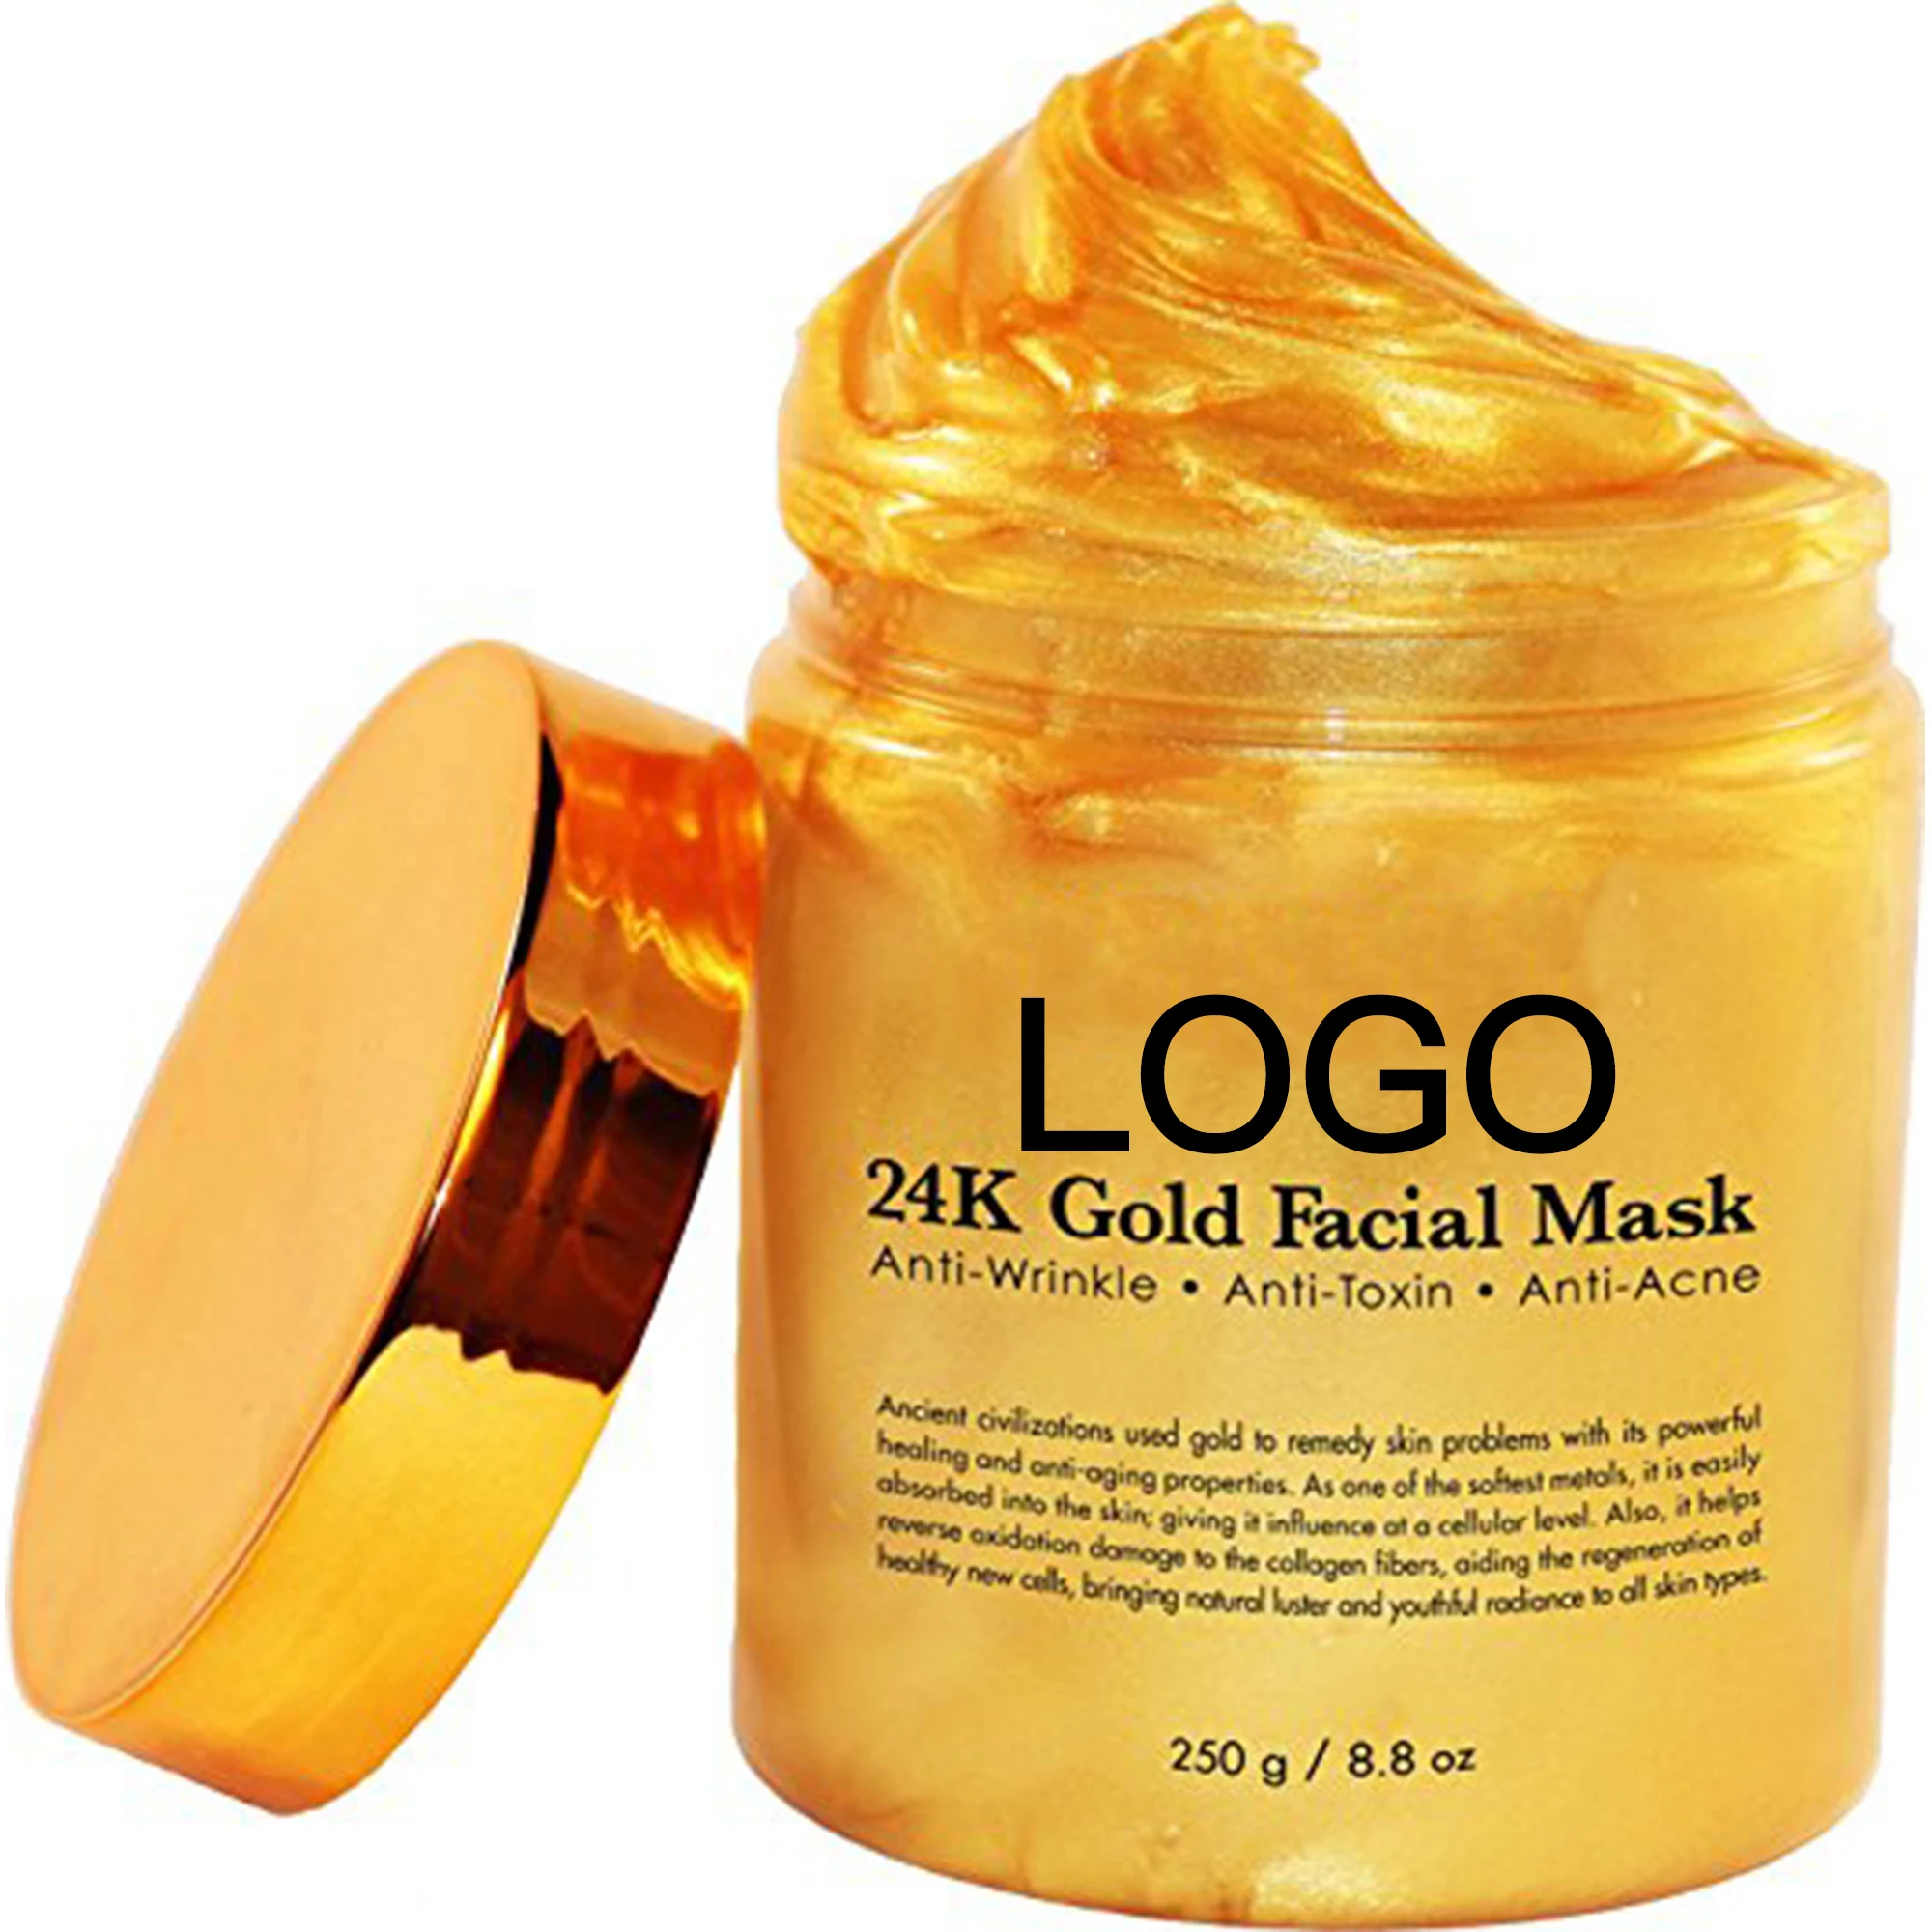 24k gold отзывы. Маска Gold Collagen Золотая для лица 24 k. Маска для лица 24к Gold Корея. 24k Luxury Gold Skin Care, Соmplete. 24k Gold маска для лица.